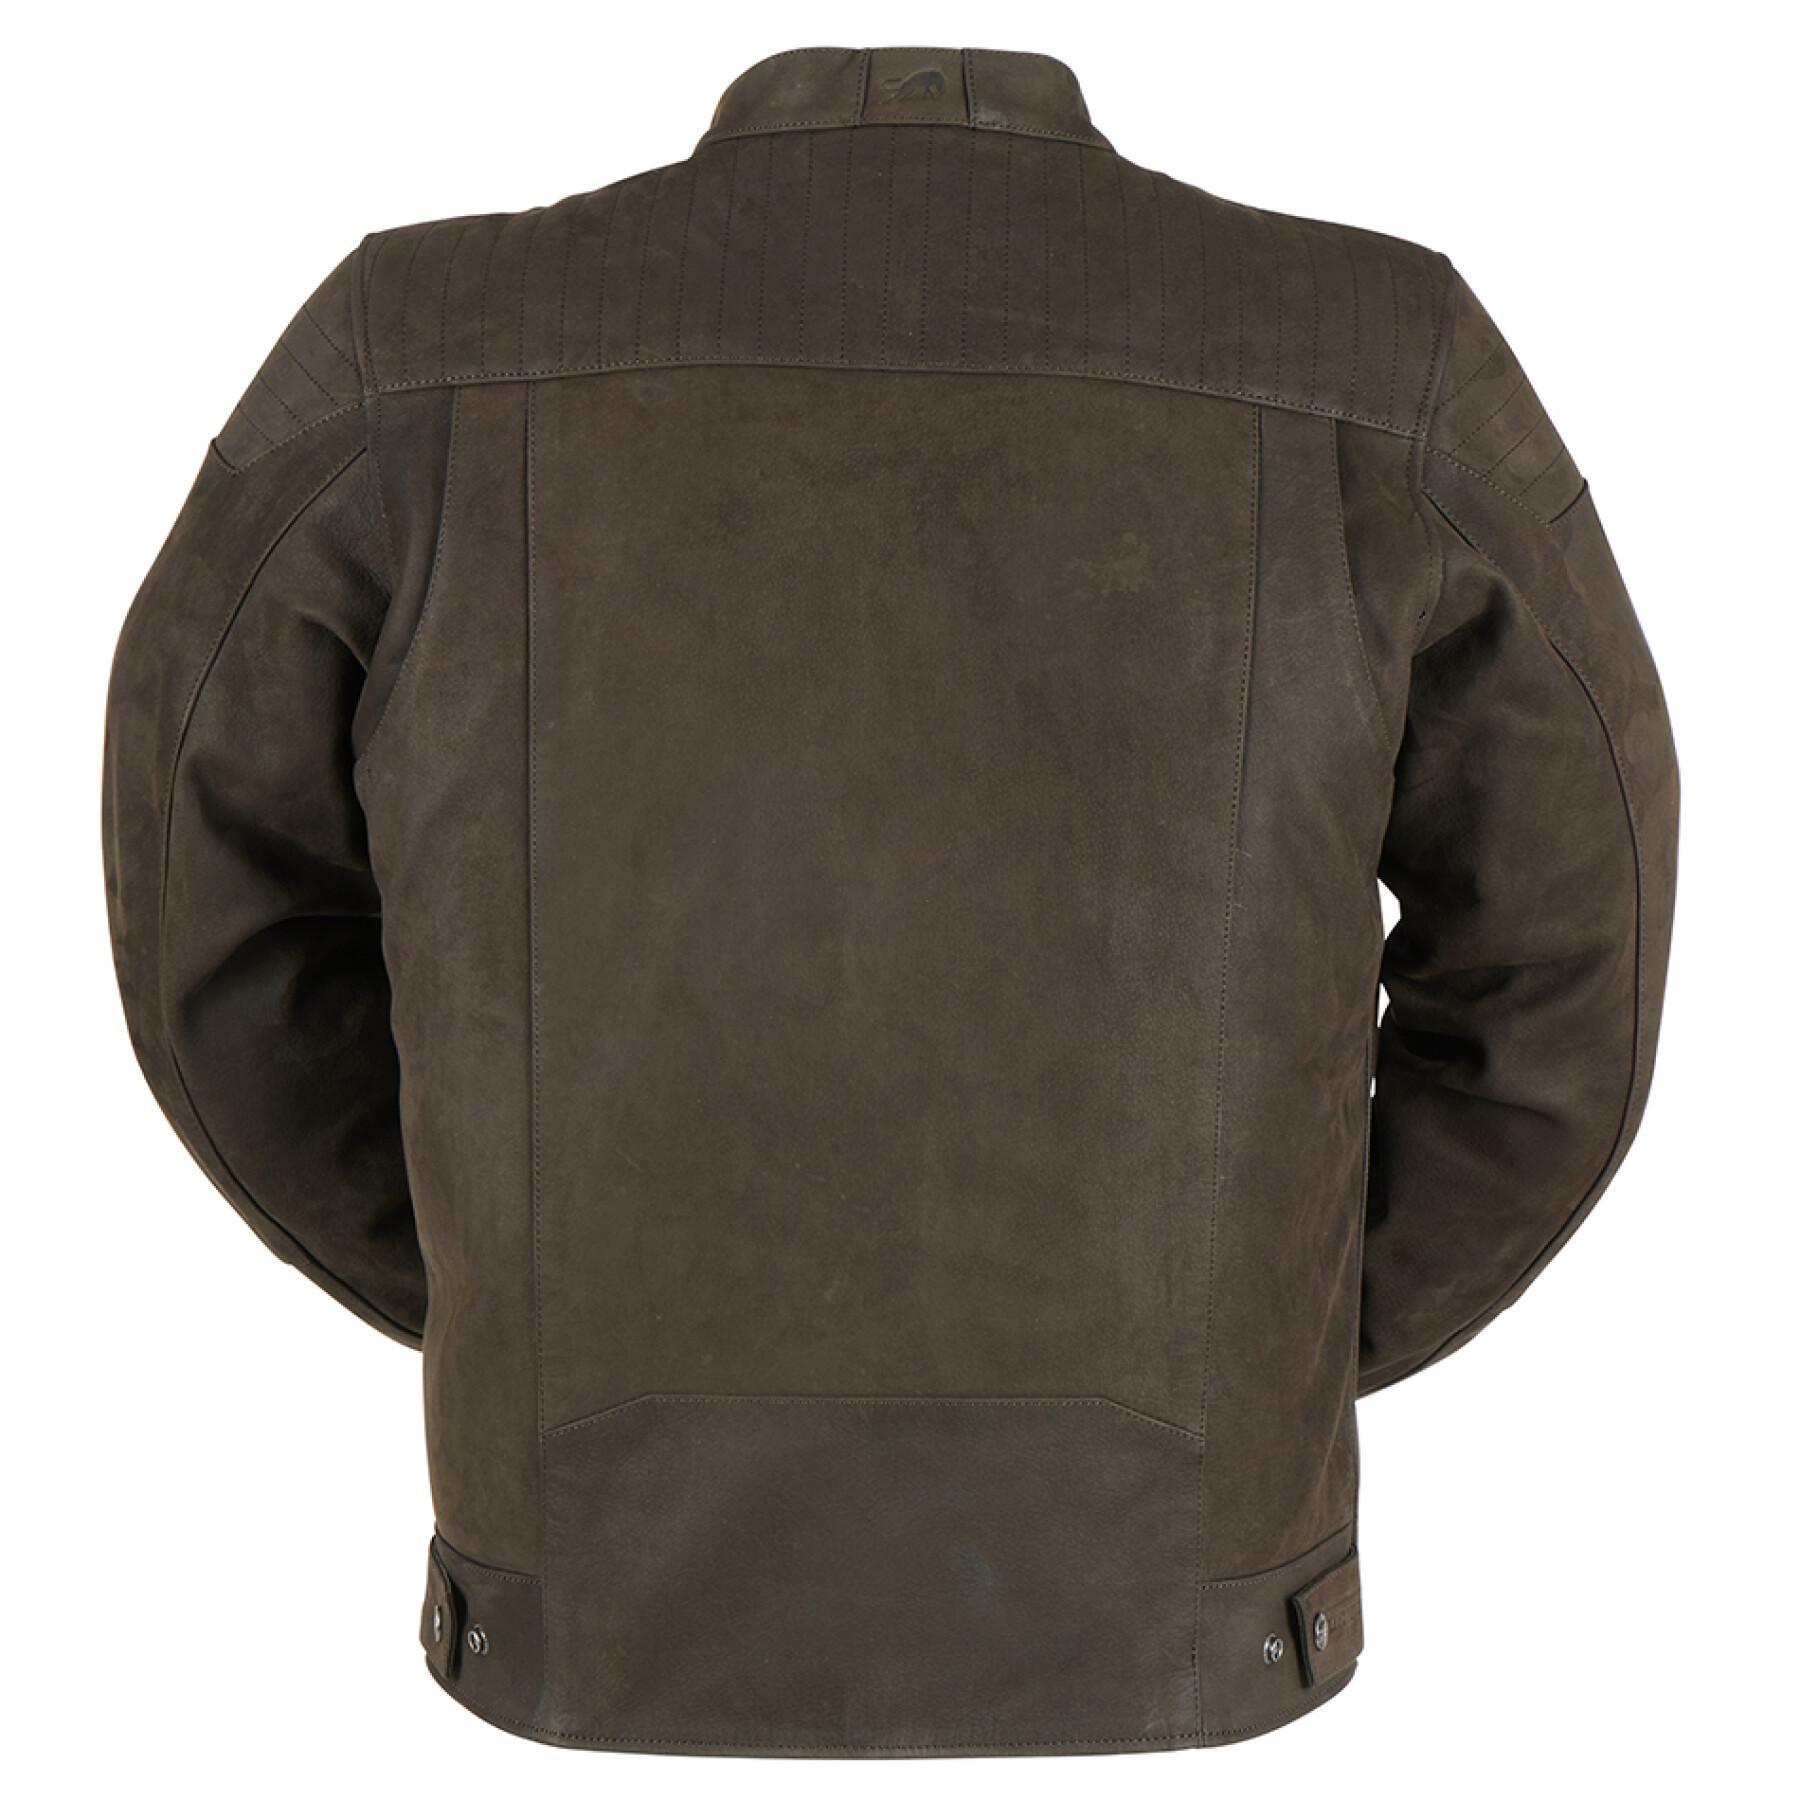 Leather motorcycle jacket Furygan Clint Evo